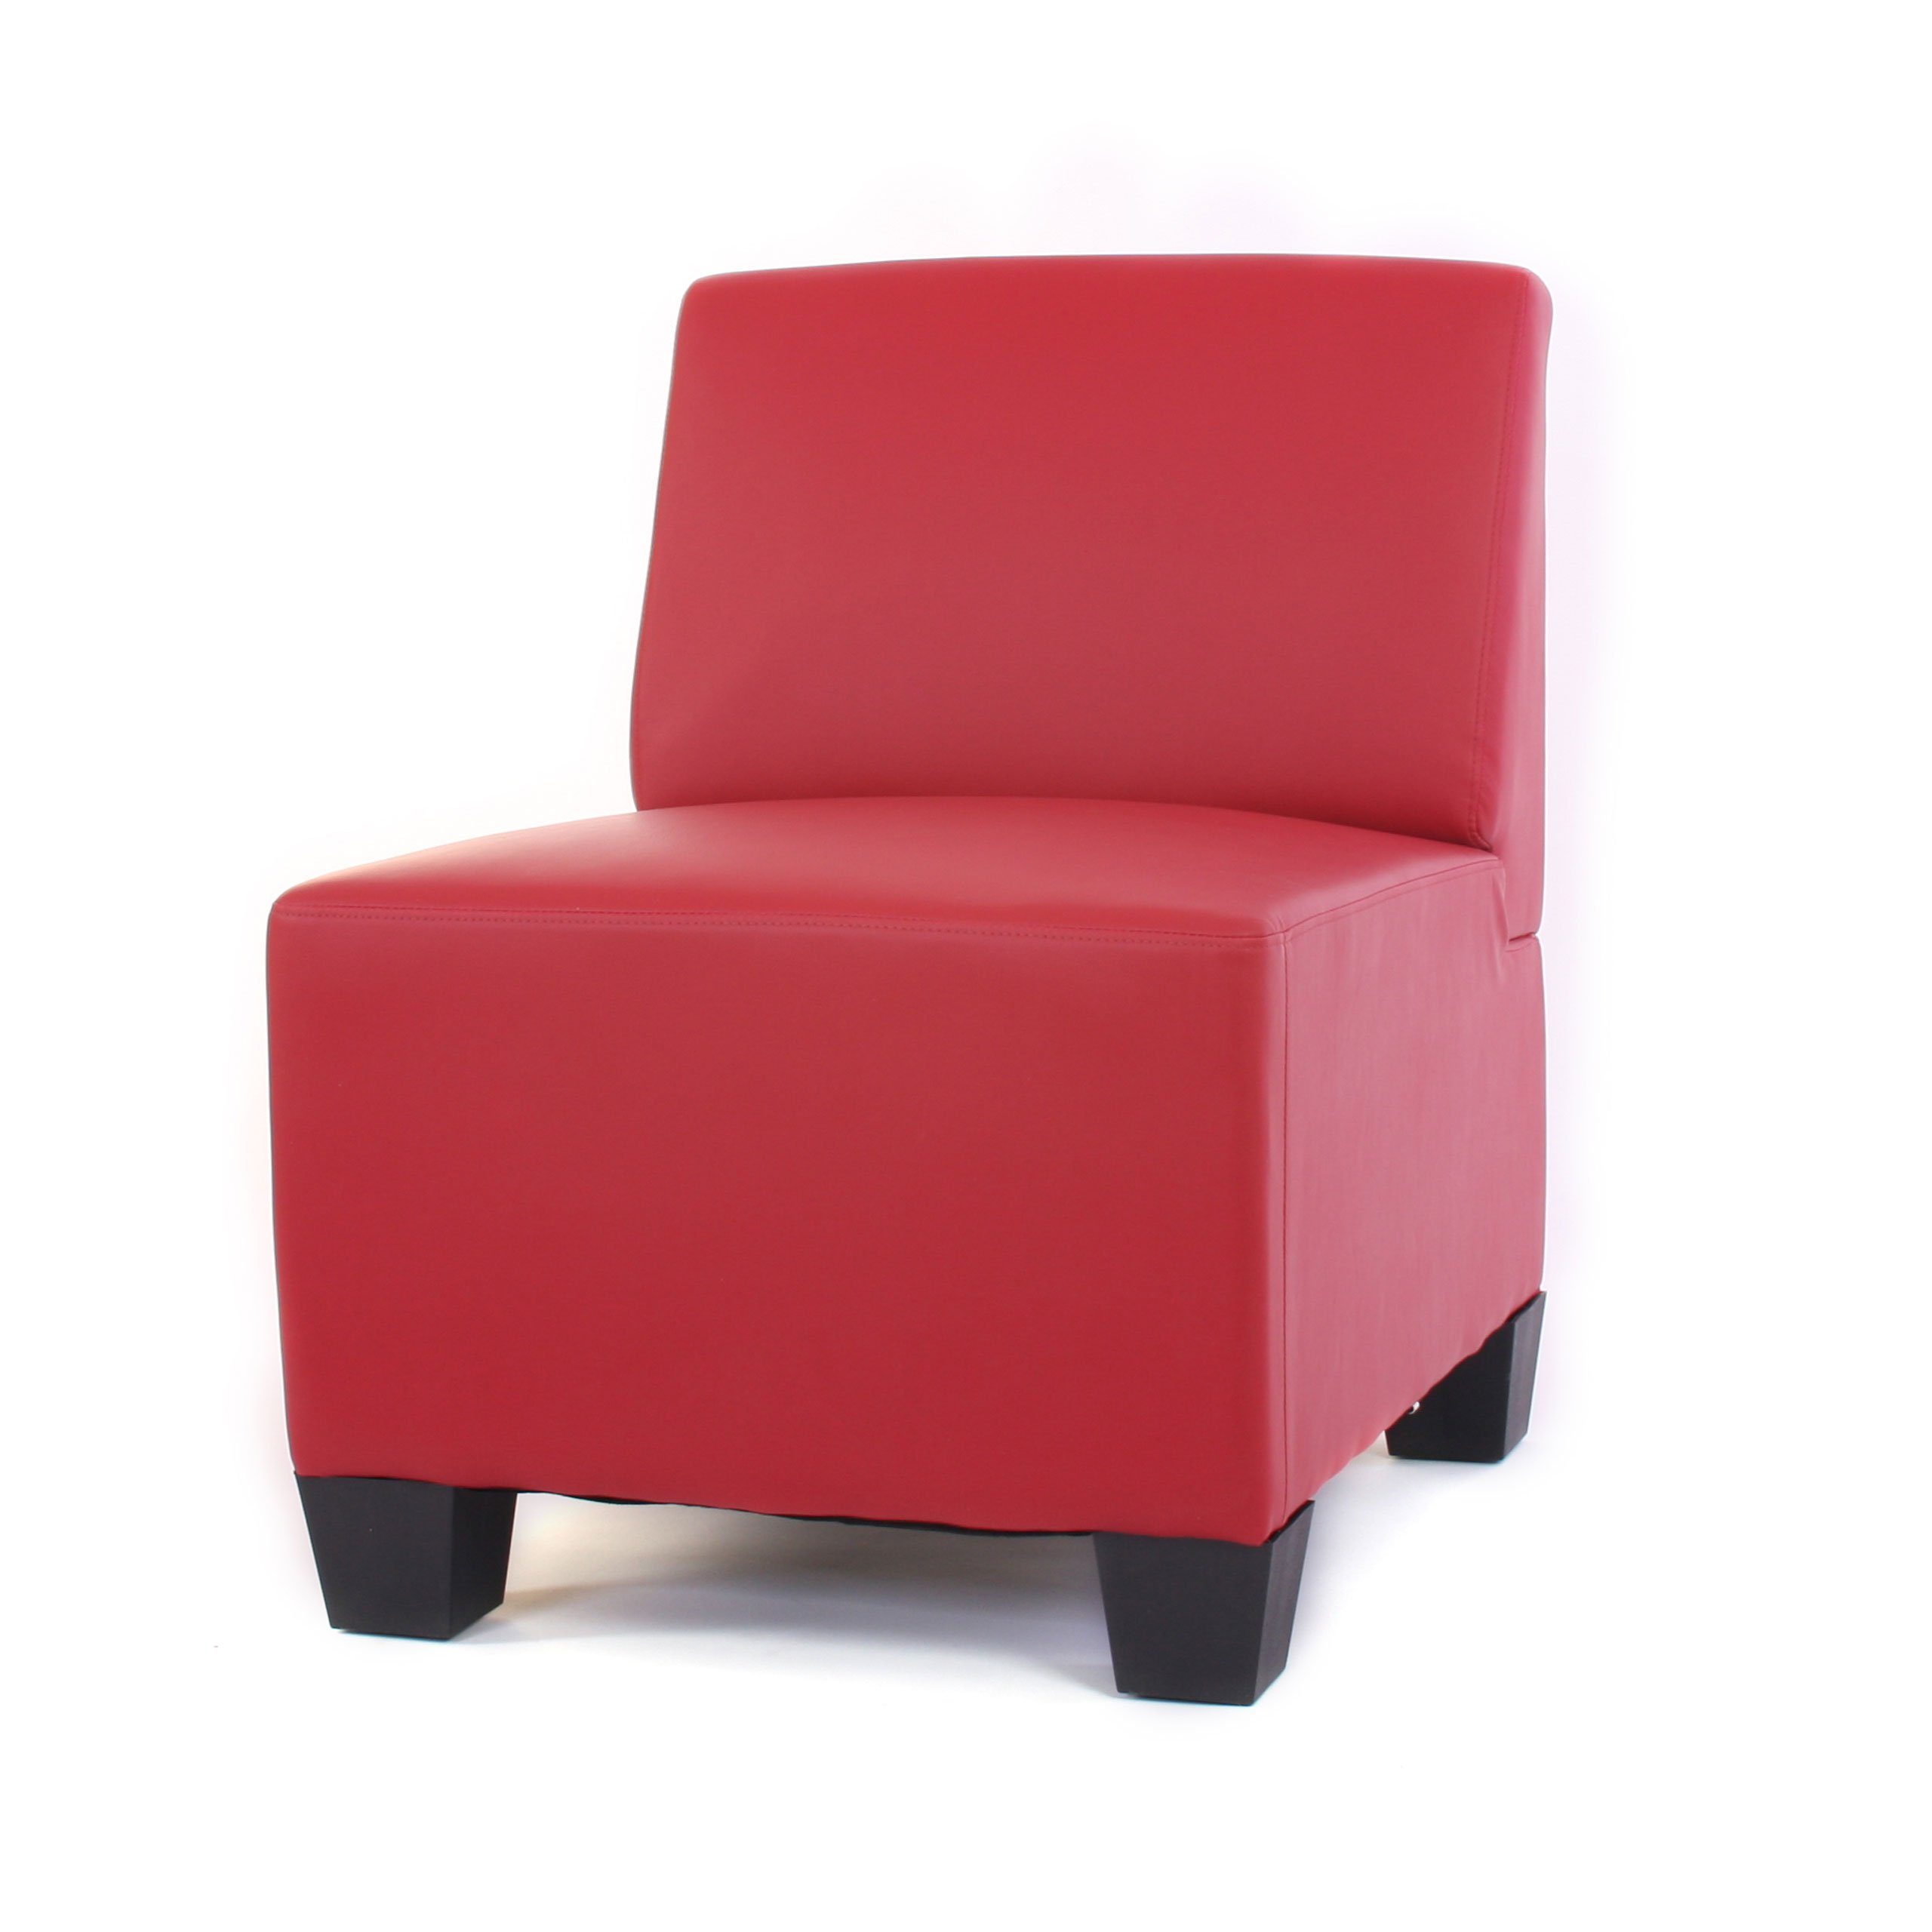 der Elementen | Erweiterbar Set, 3-Sitzer MCW weiteren Lyon-Serie Polsterung, rot Moncalieri-3, rot mit bequeme